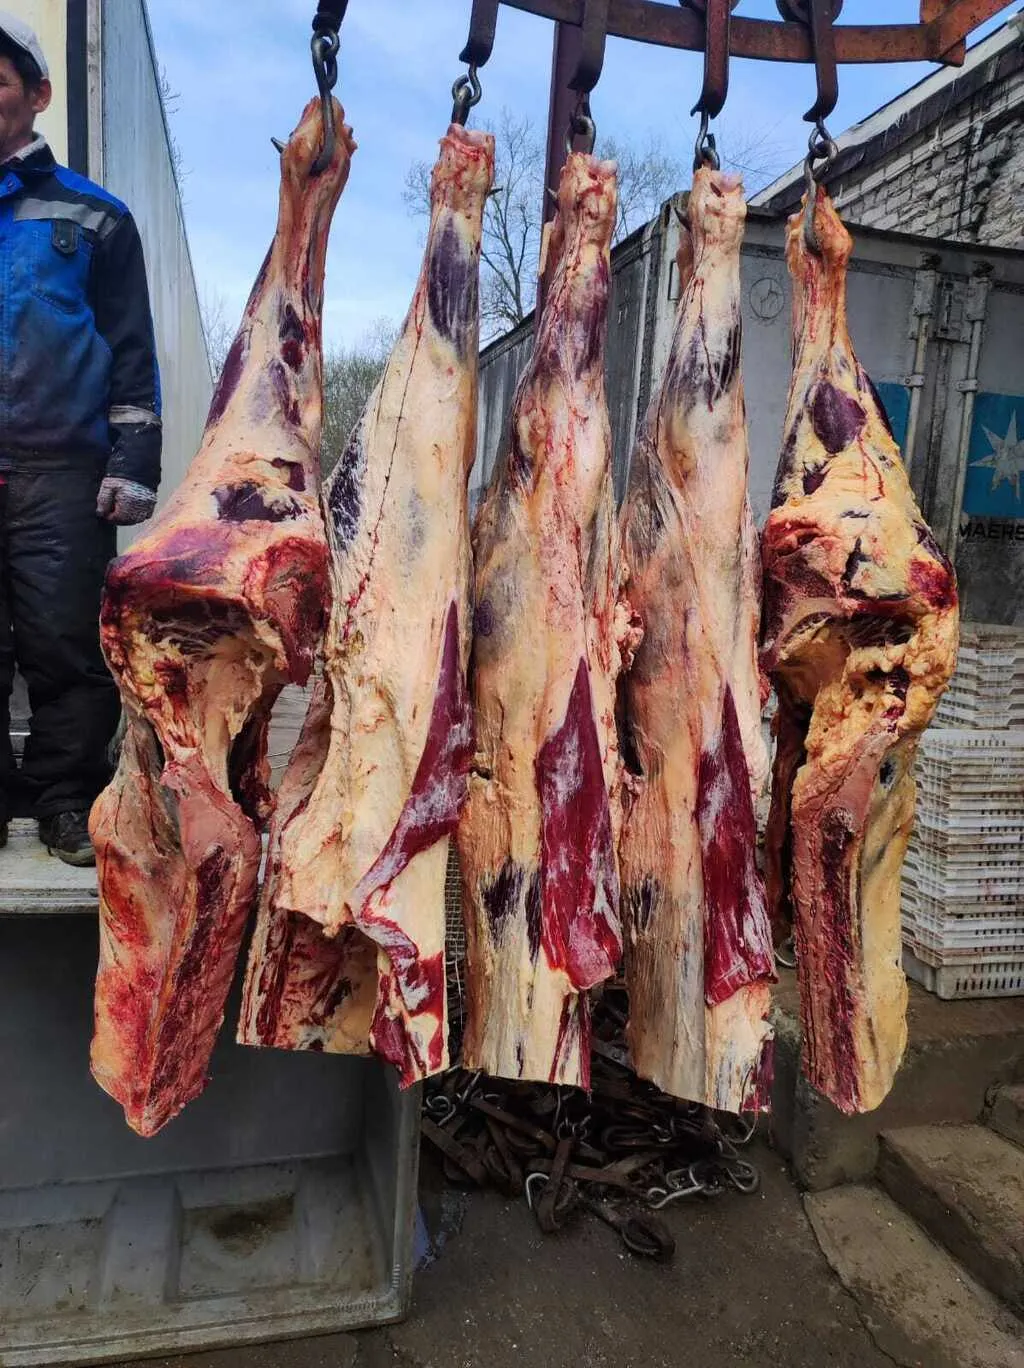 мясо говядины в полутушах  в Москве и Московской области